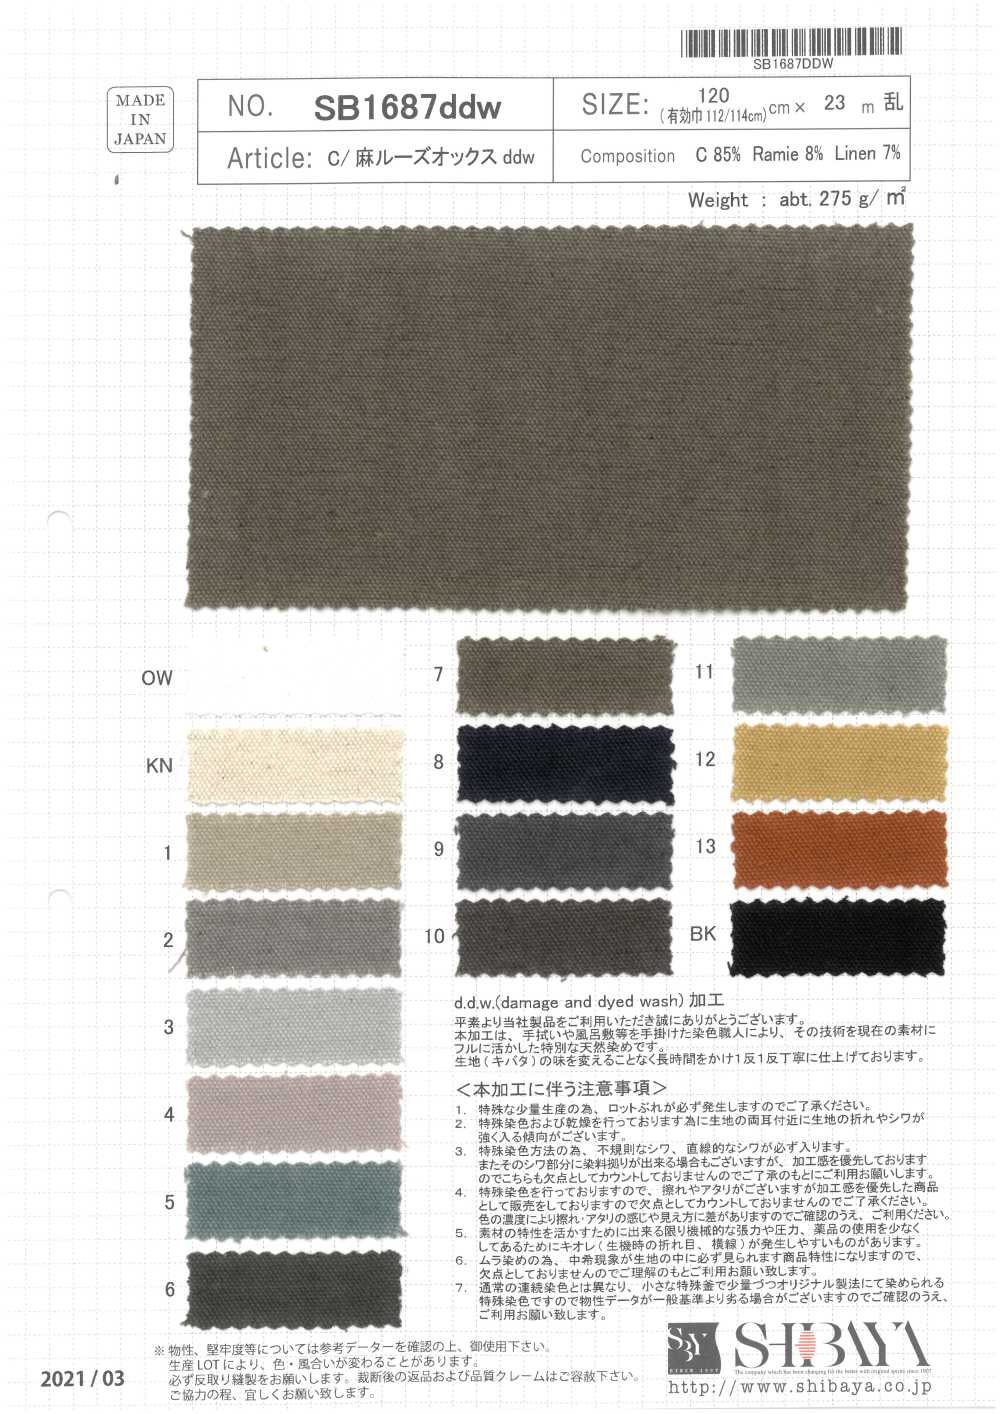 SB1687ddw Cotton/ Linen Loose Oxford Ddw Processing[Textile / Fabric] SHIBAYA